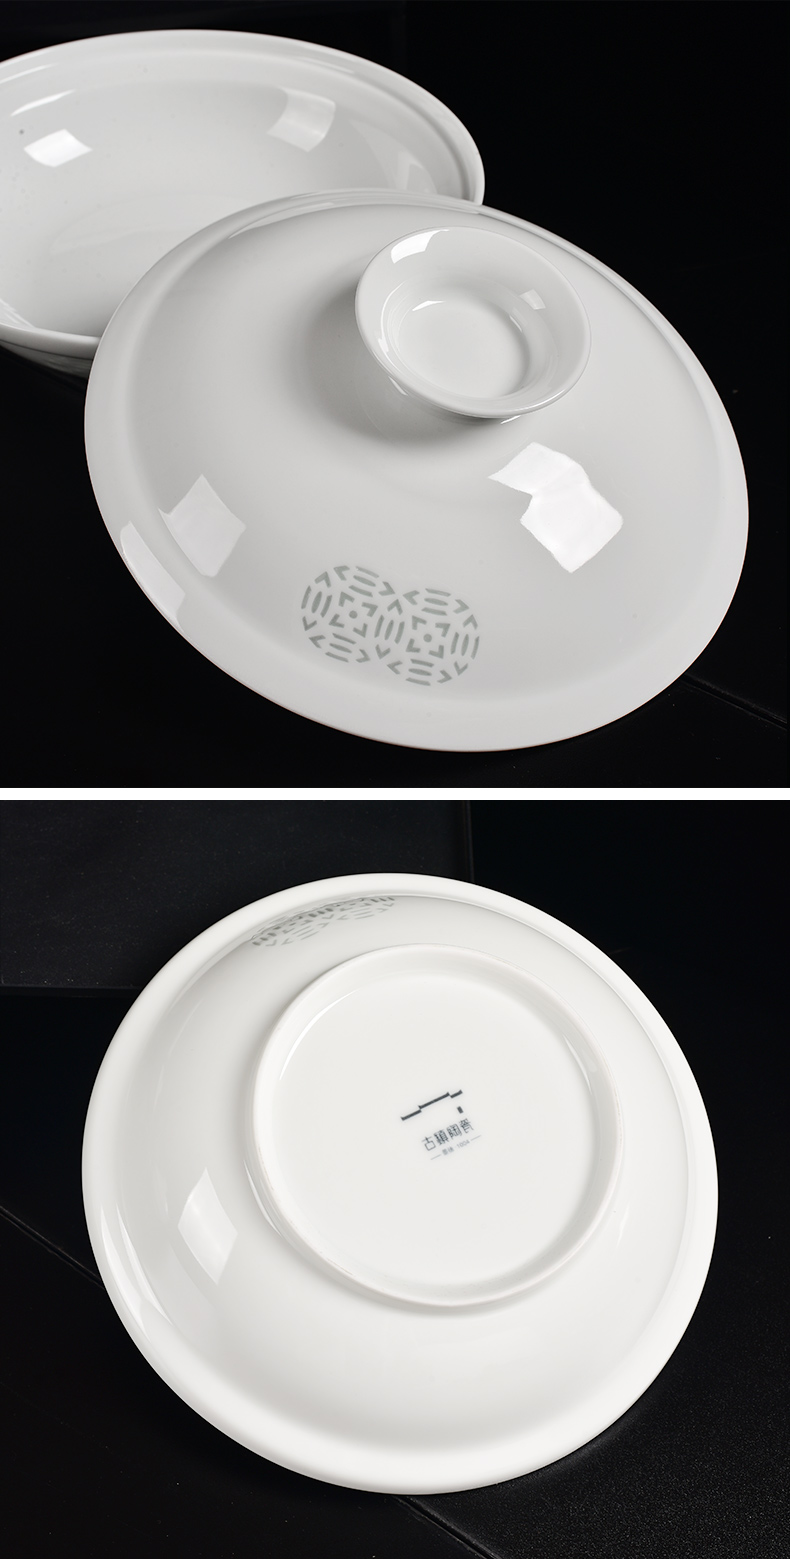 古鎮陶瓷景德鎮陶瓷帶蓋碗湯碗深盤菜盤盤子白瓷招財進寶合器餐具